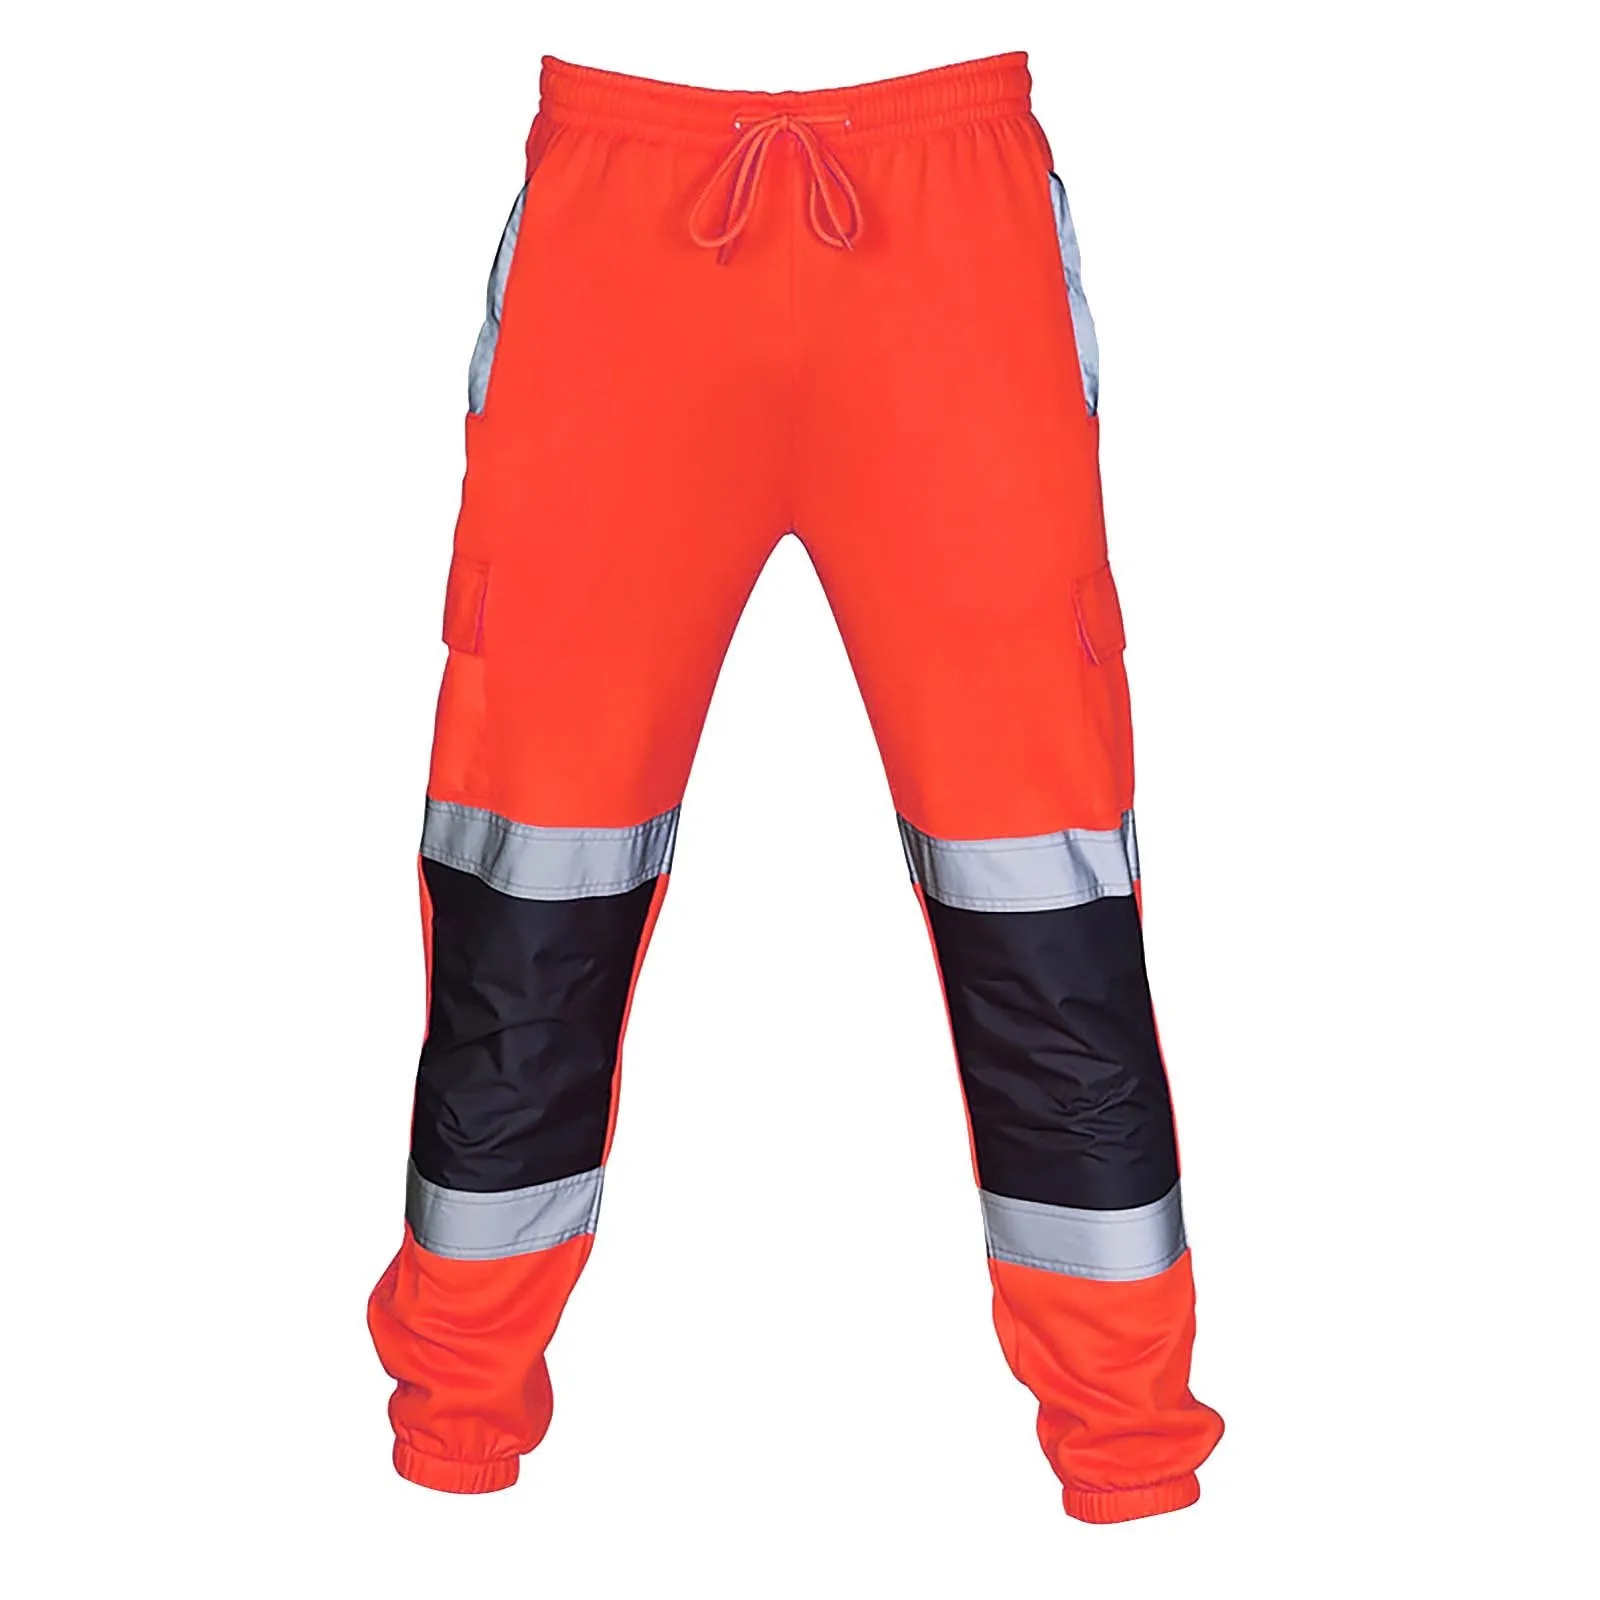 

Брюки мужские светоотражающие, тренировочные спортивные штаны со множеством карманов, высокопрочные Рабочие Комбинезоны для дороги, повседневные рабочие штаны